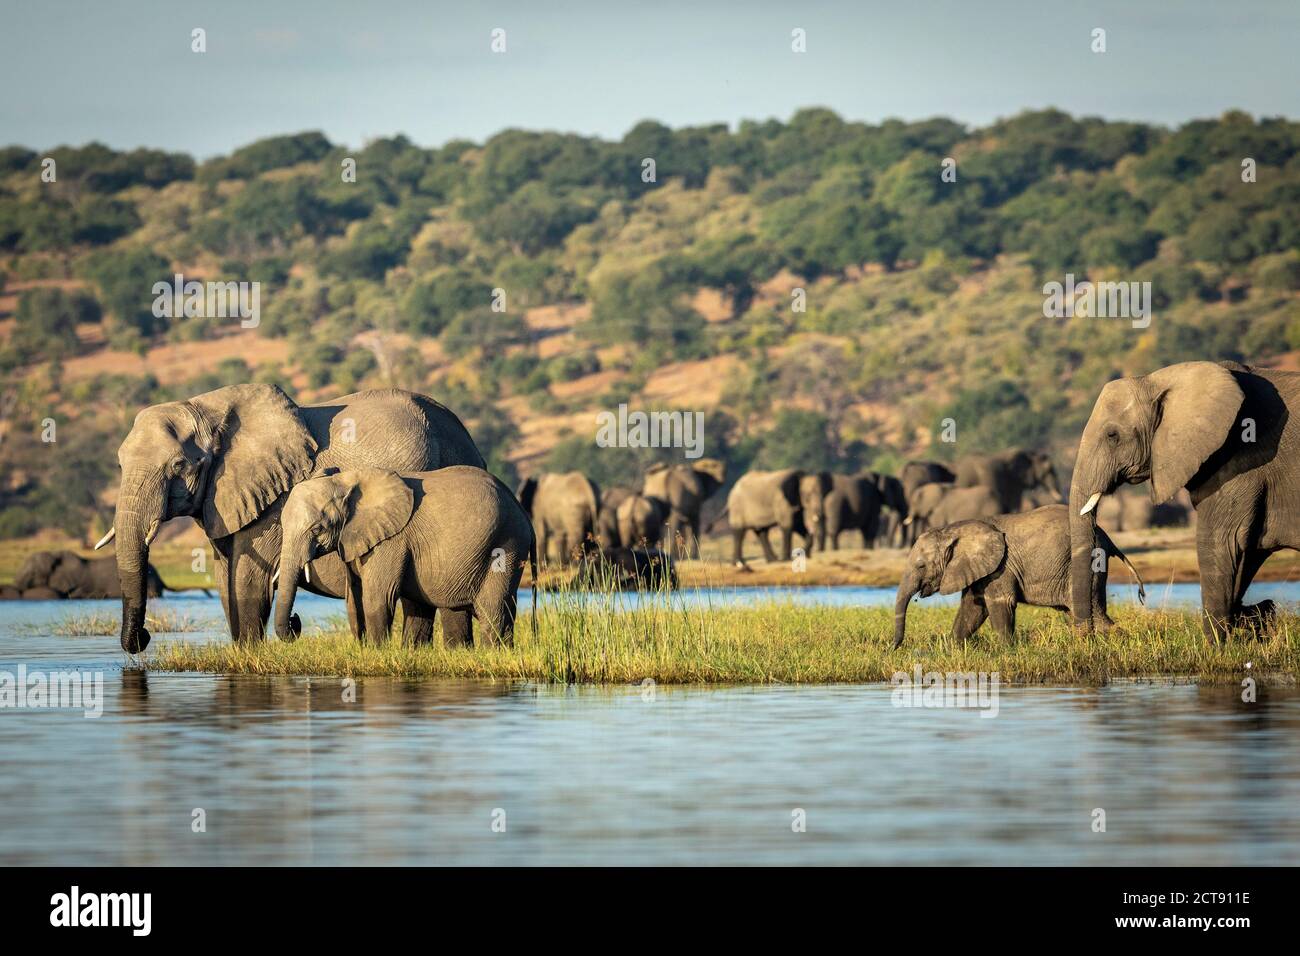 Elefanten stehen auf einem grasbewachsenen Ufer des Chobe River trinken Wasser am späten Nachmittag in Botswana Stockfoto